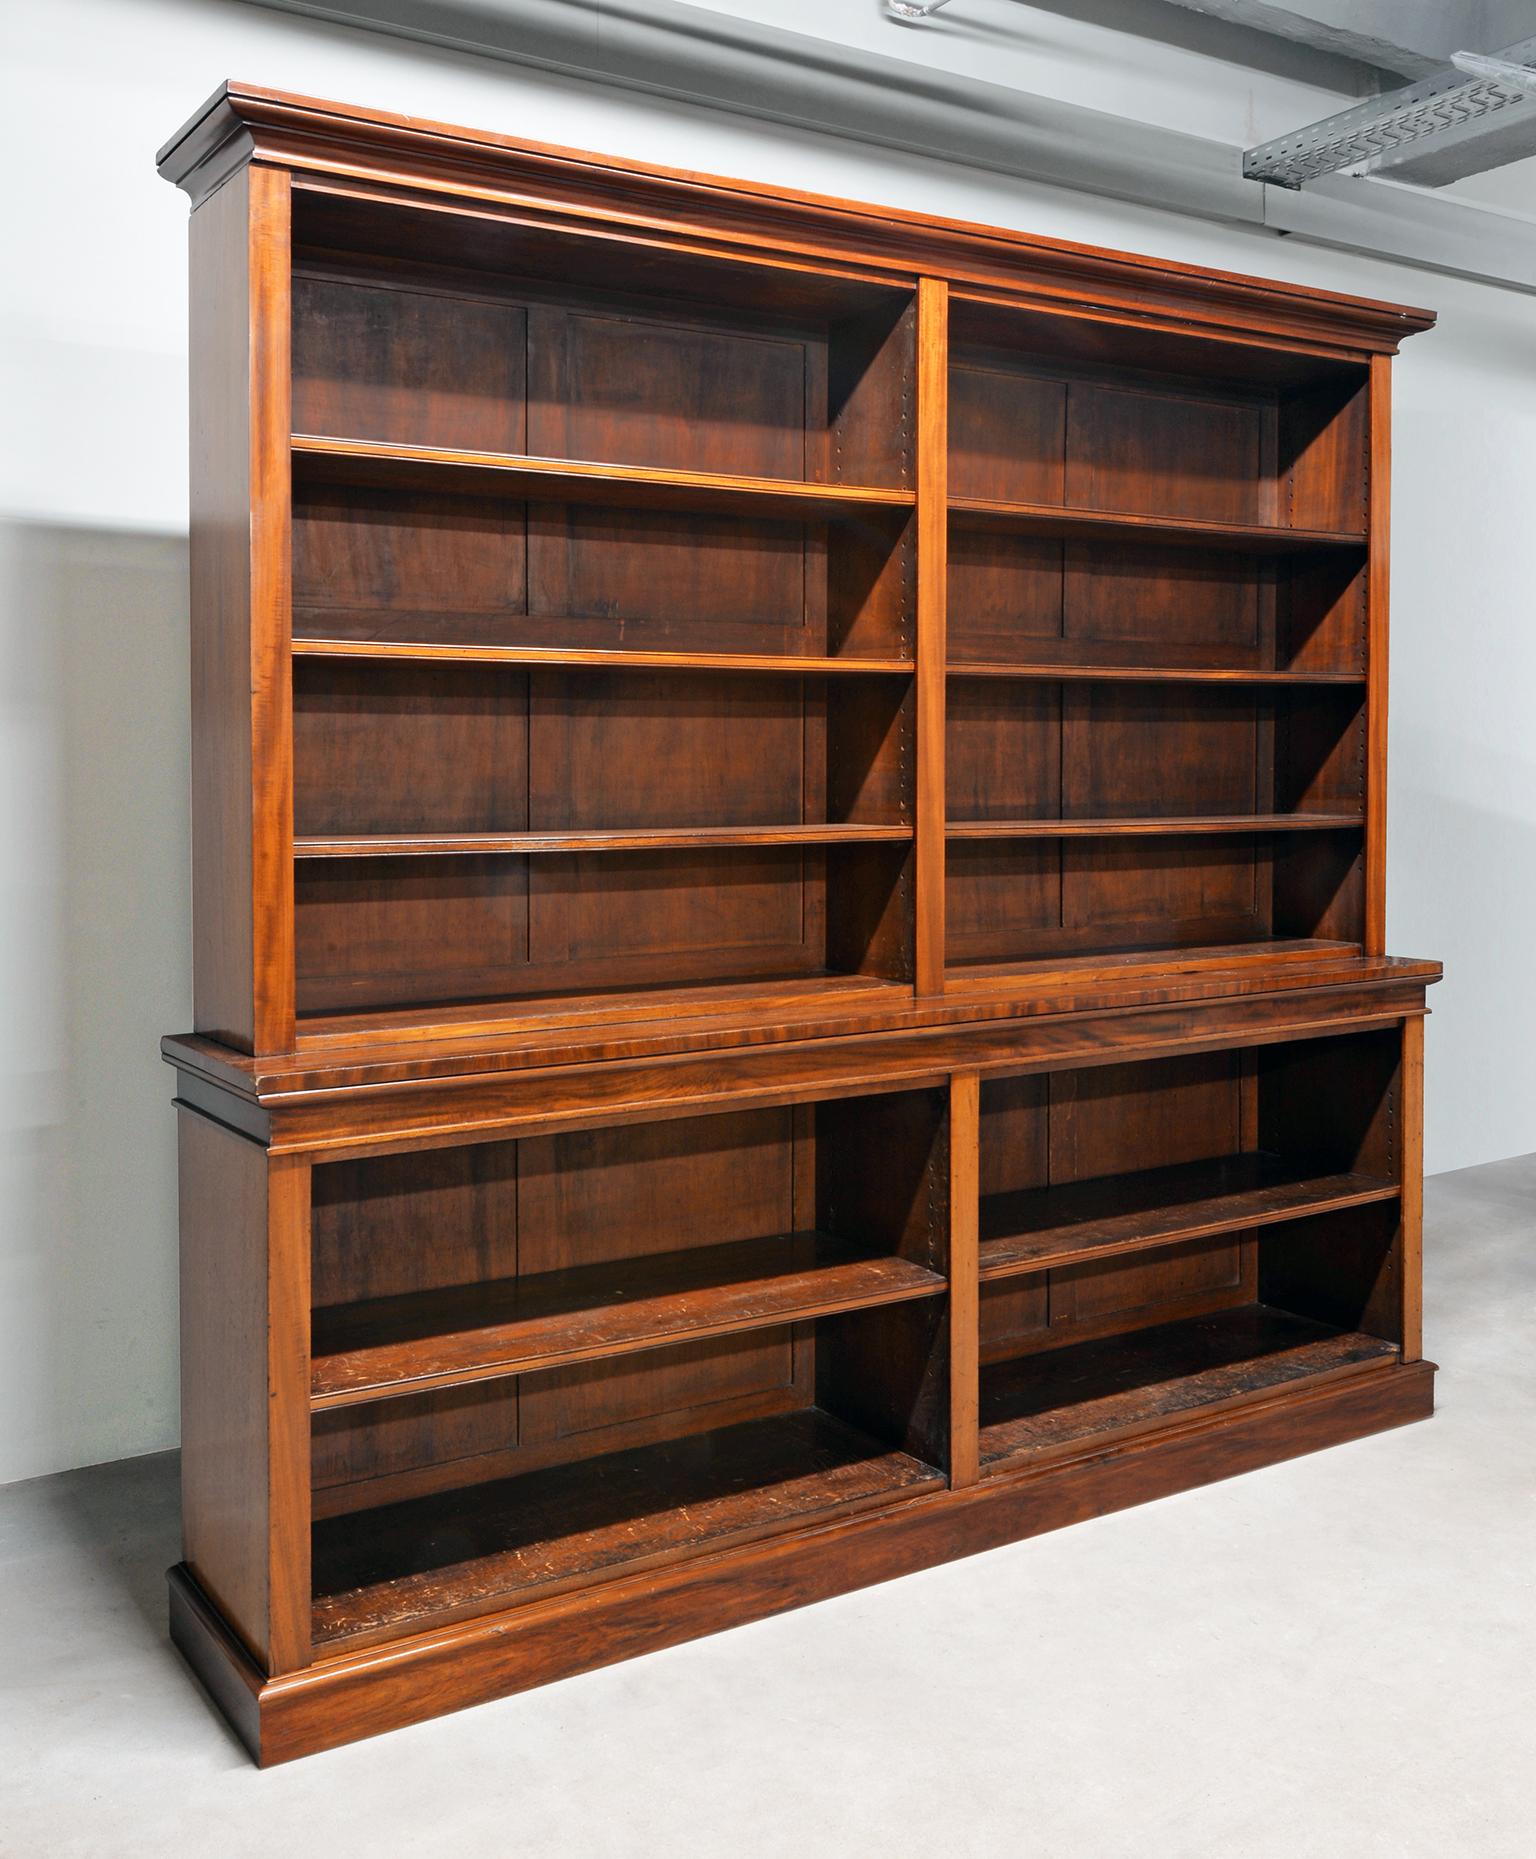 Großes viktorianisches offenes Bücherregal aus Mahagoni, vierteilig, um 1860
Das Bücherregal kann auf Anfrage restauriert werden.

Literatur: R. W. Symonds und B. B. Whineray, Victorian Furniture, London 1987, S. 149-160.